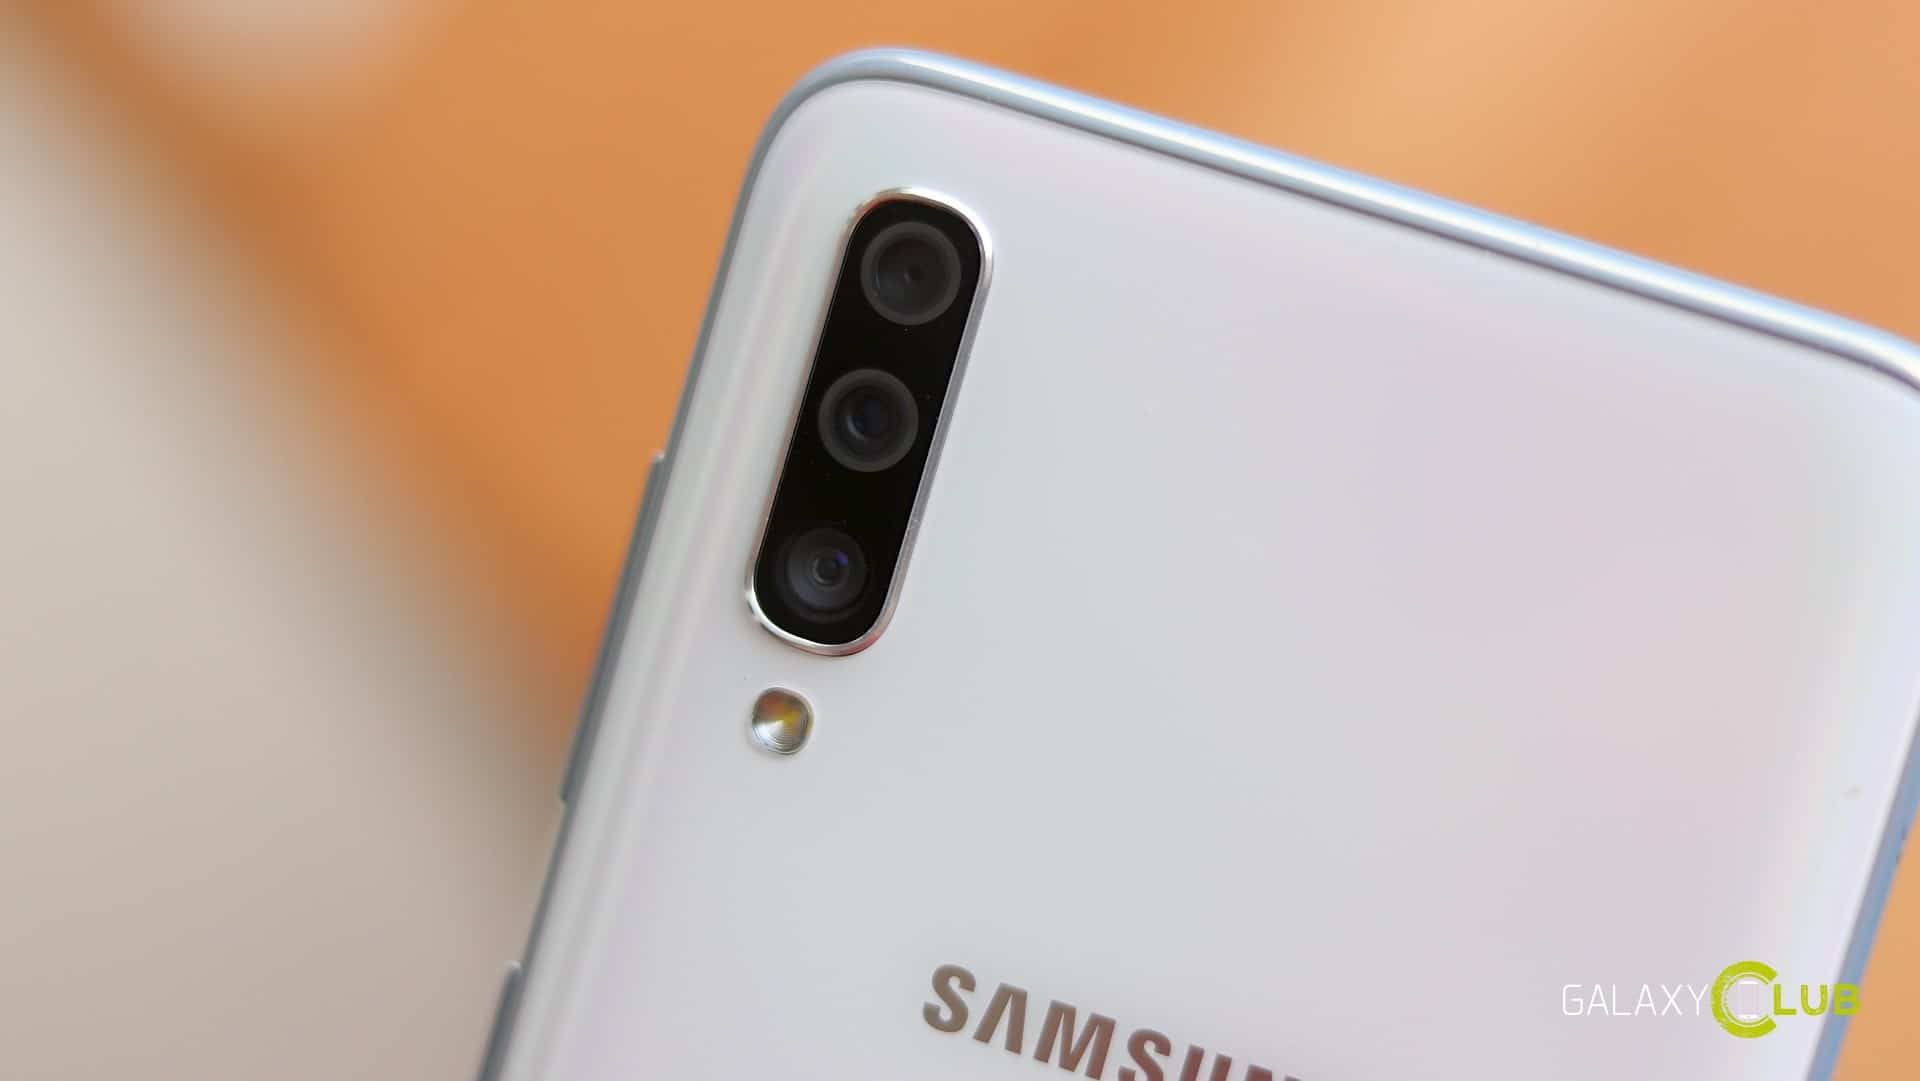 Samsung Galaxy Update A70 ger juli patch, nattläge kamera